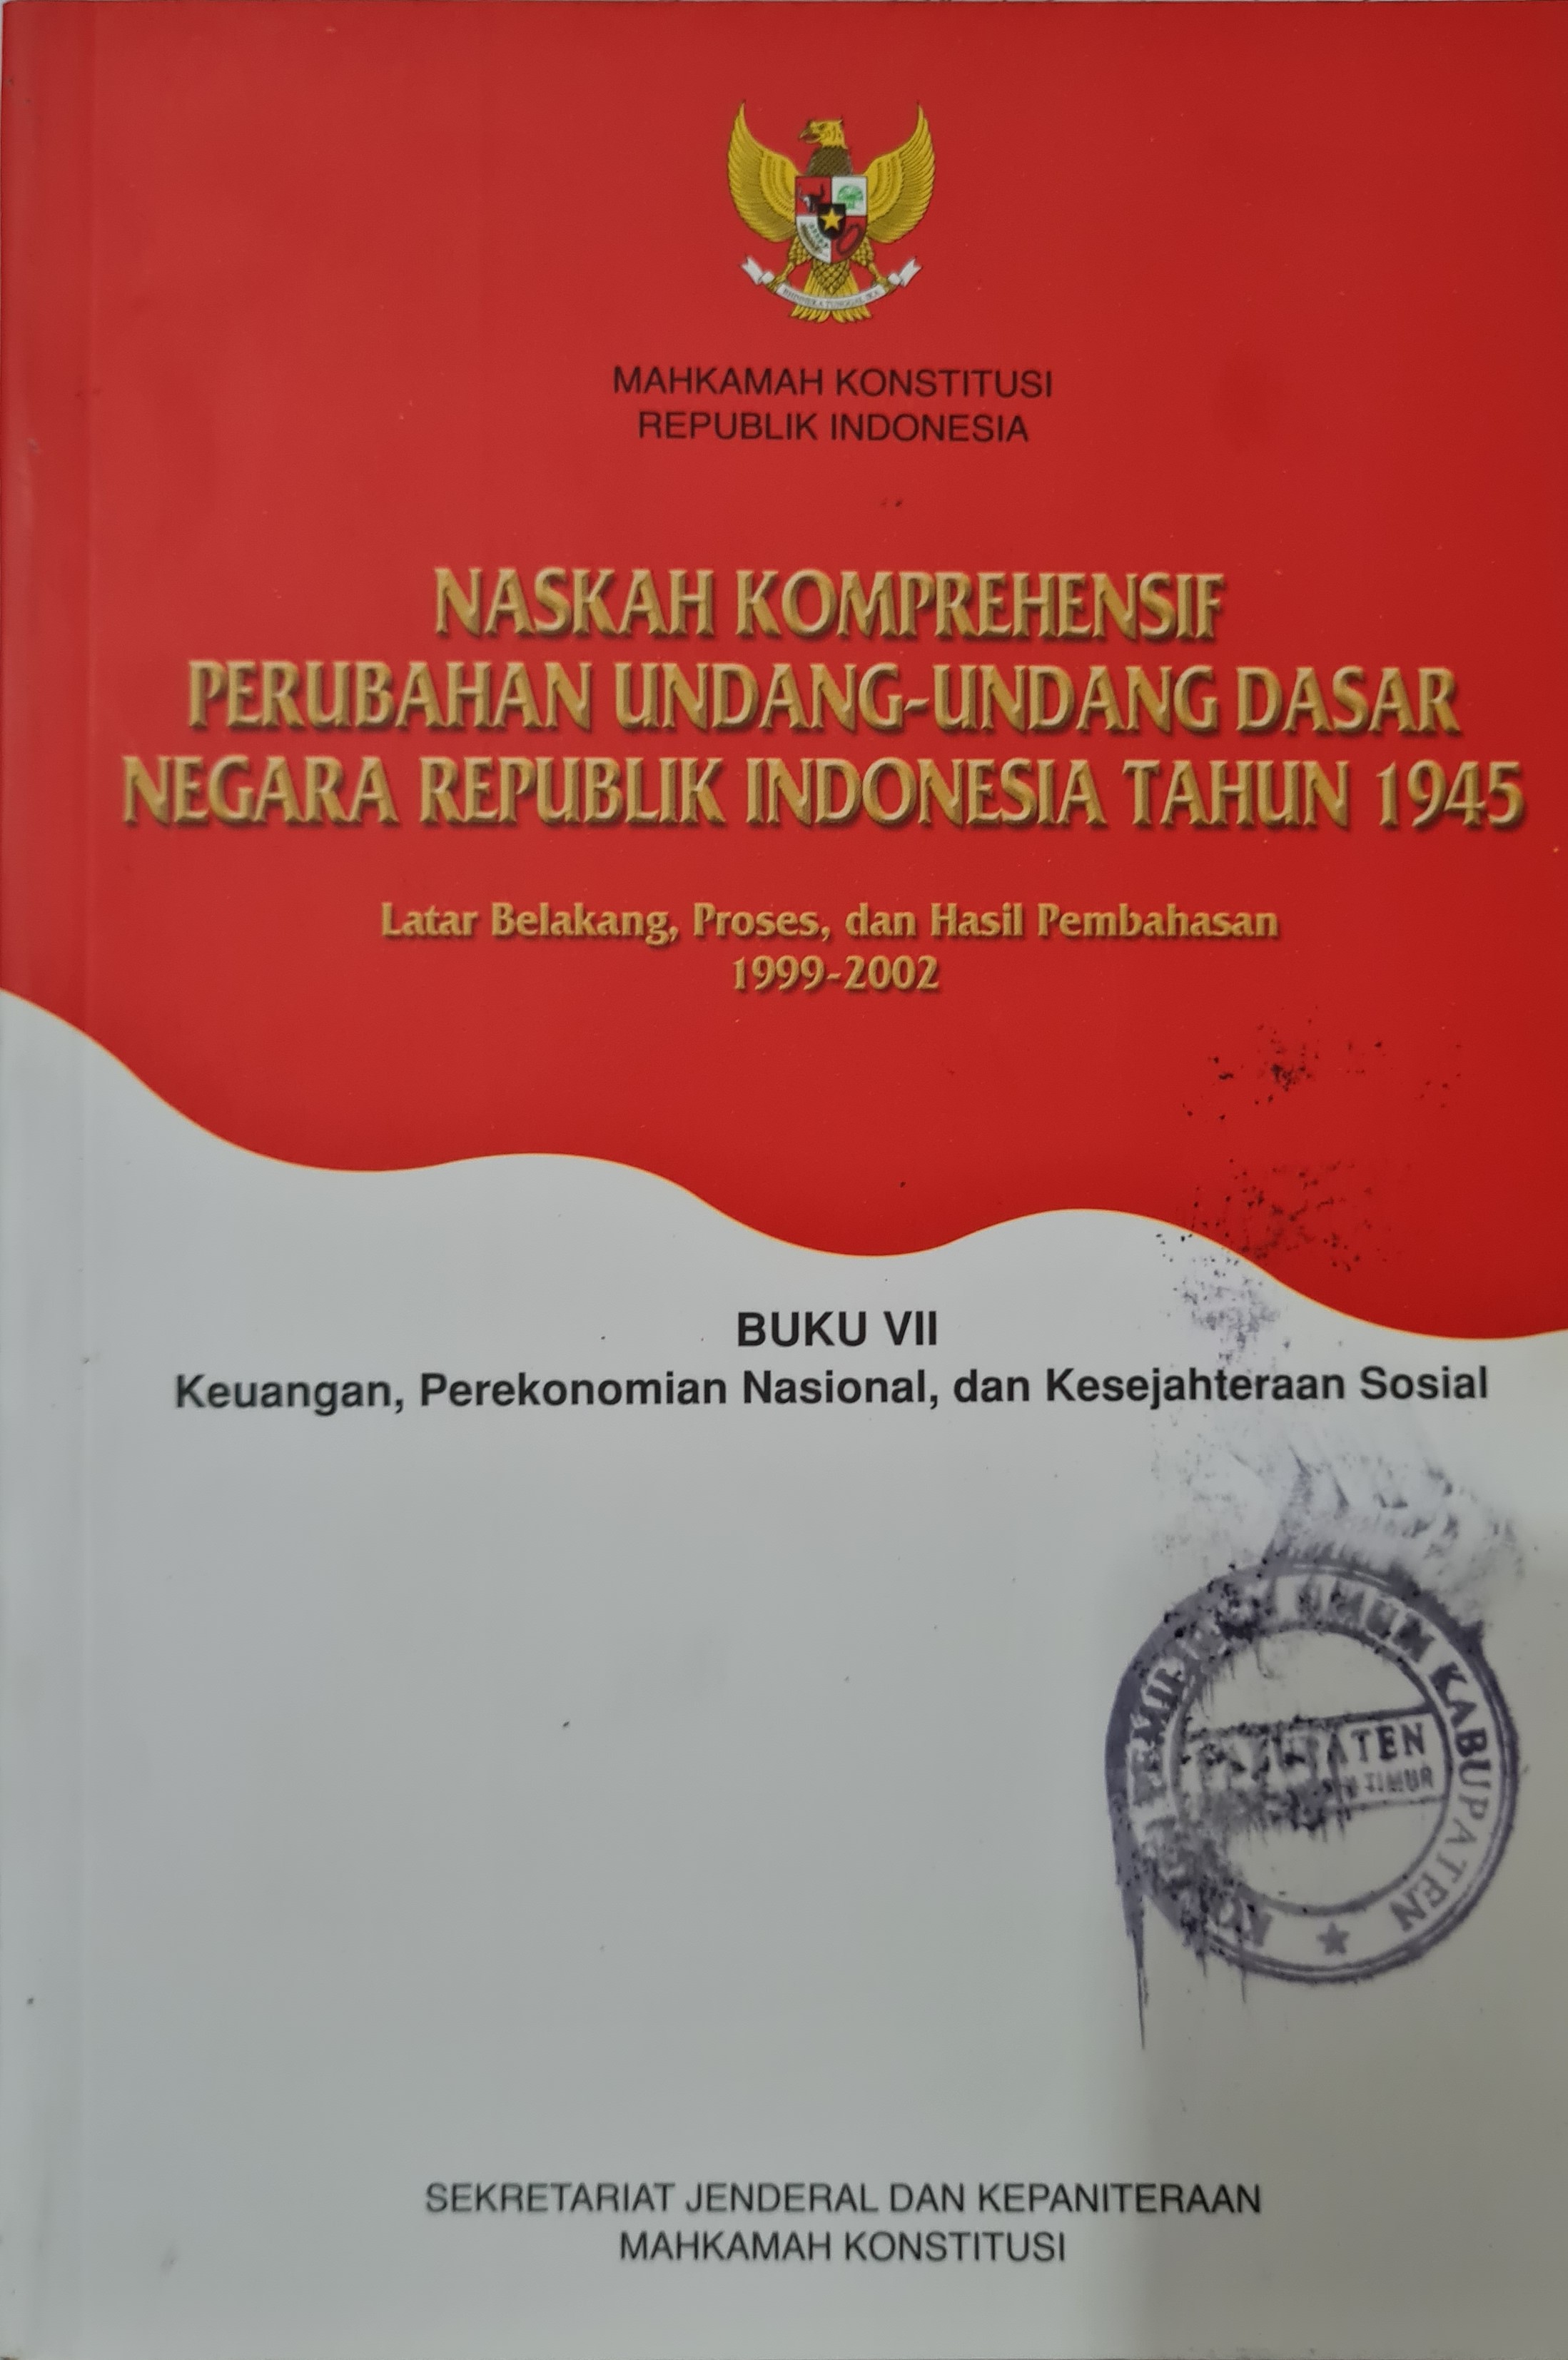 Naskah Komprehensif Perubahan Undang-Undang Dasar Negara Republik Indonesia Tahun 1945 Buku VII Keuangan, Perekonomian Nasional, dan Kesejahteraan Sosial